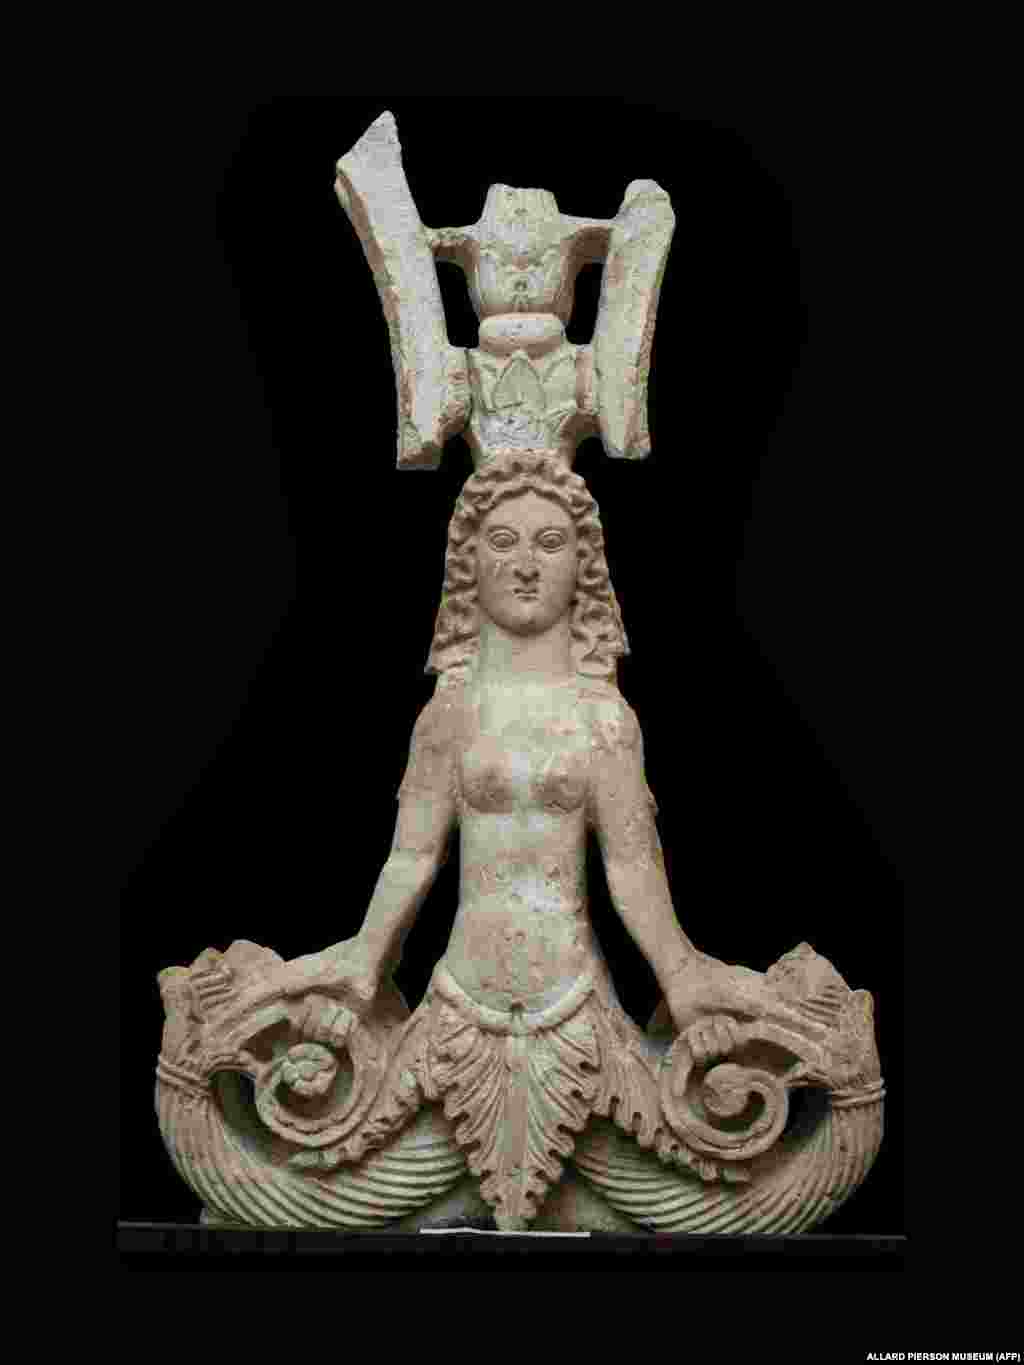 Фігура морського чудовиська з двома хвостами I&ndash;II ст. н.е. Її знайшли на розкопках грецької колонії Пантікапей на східному узбережжі Криму